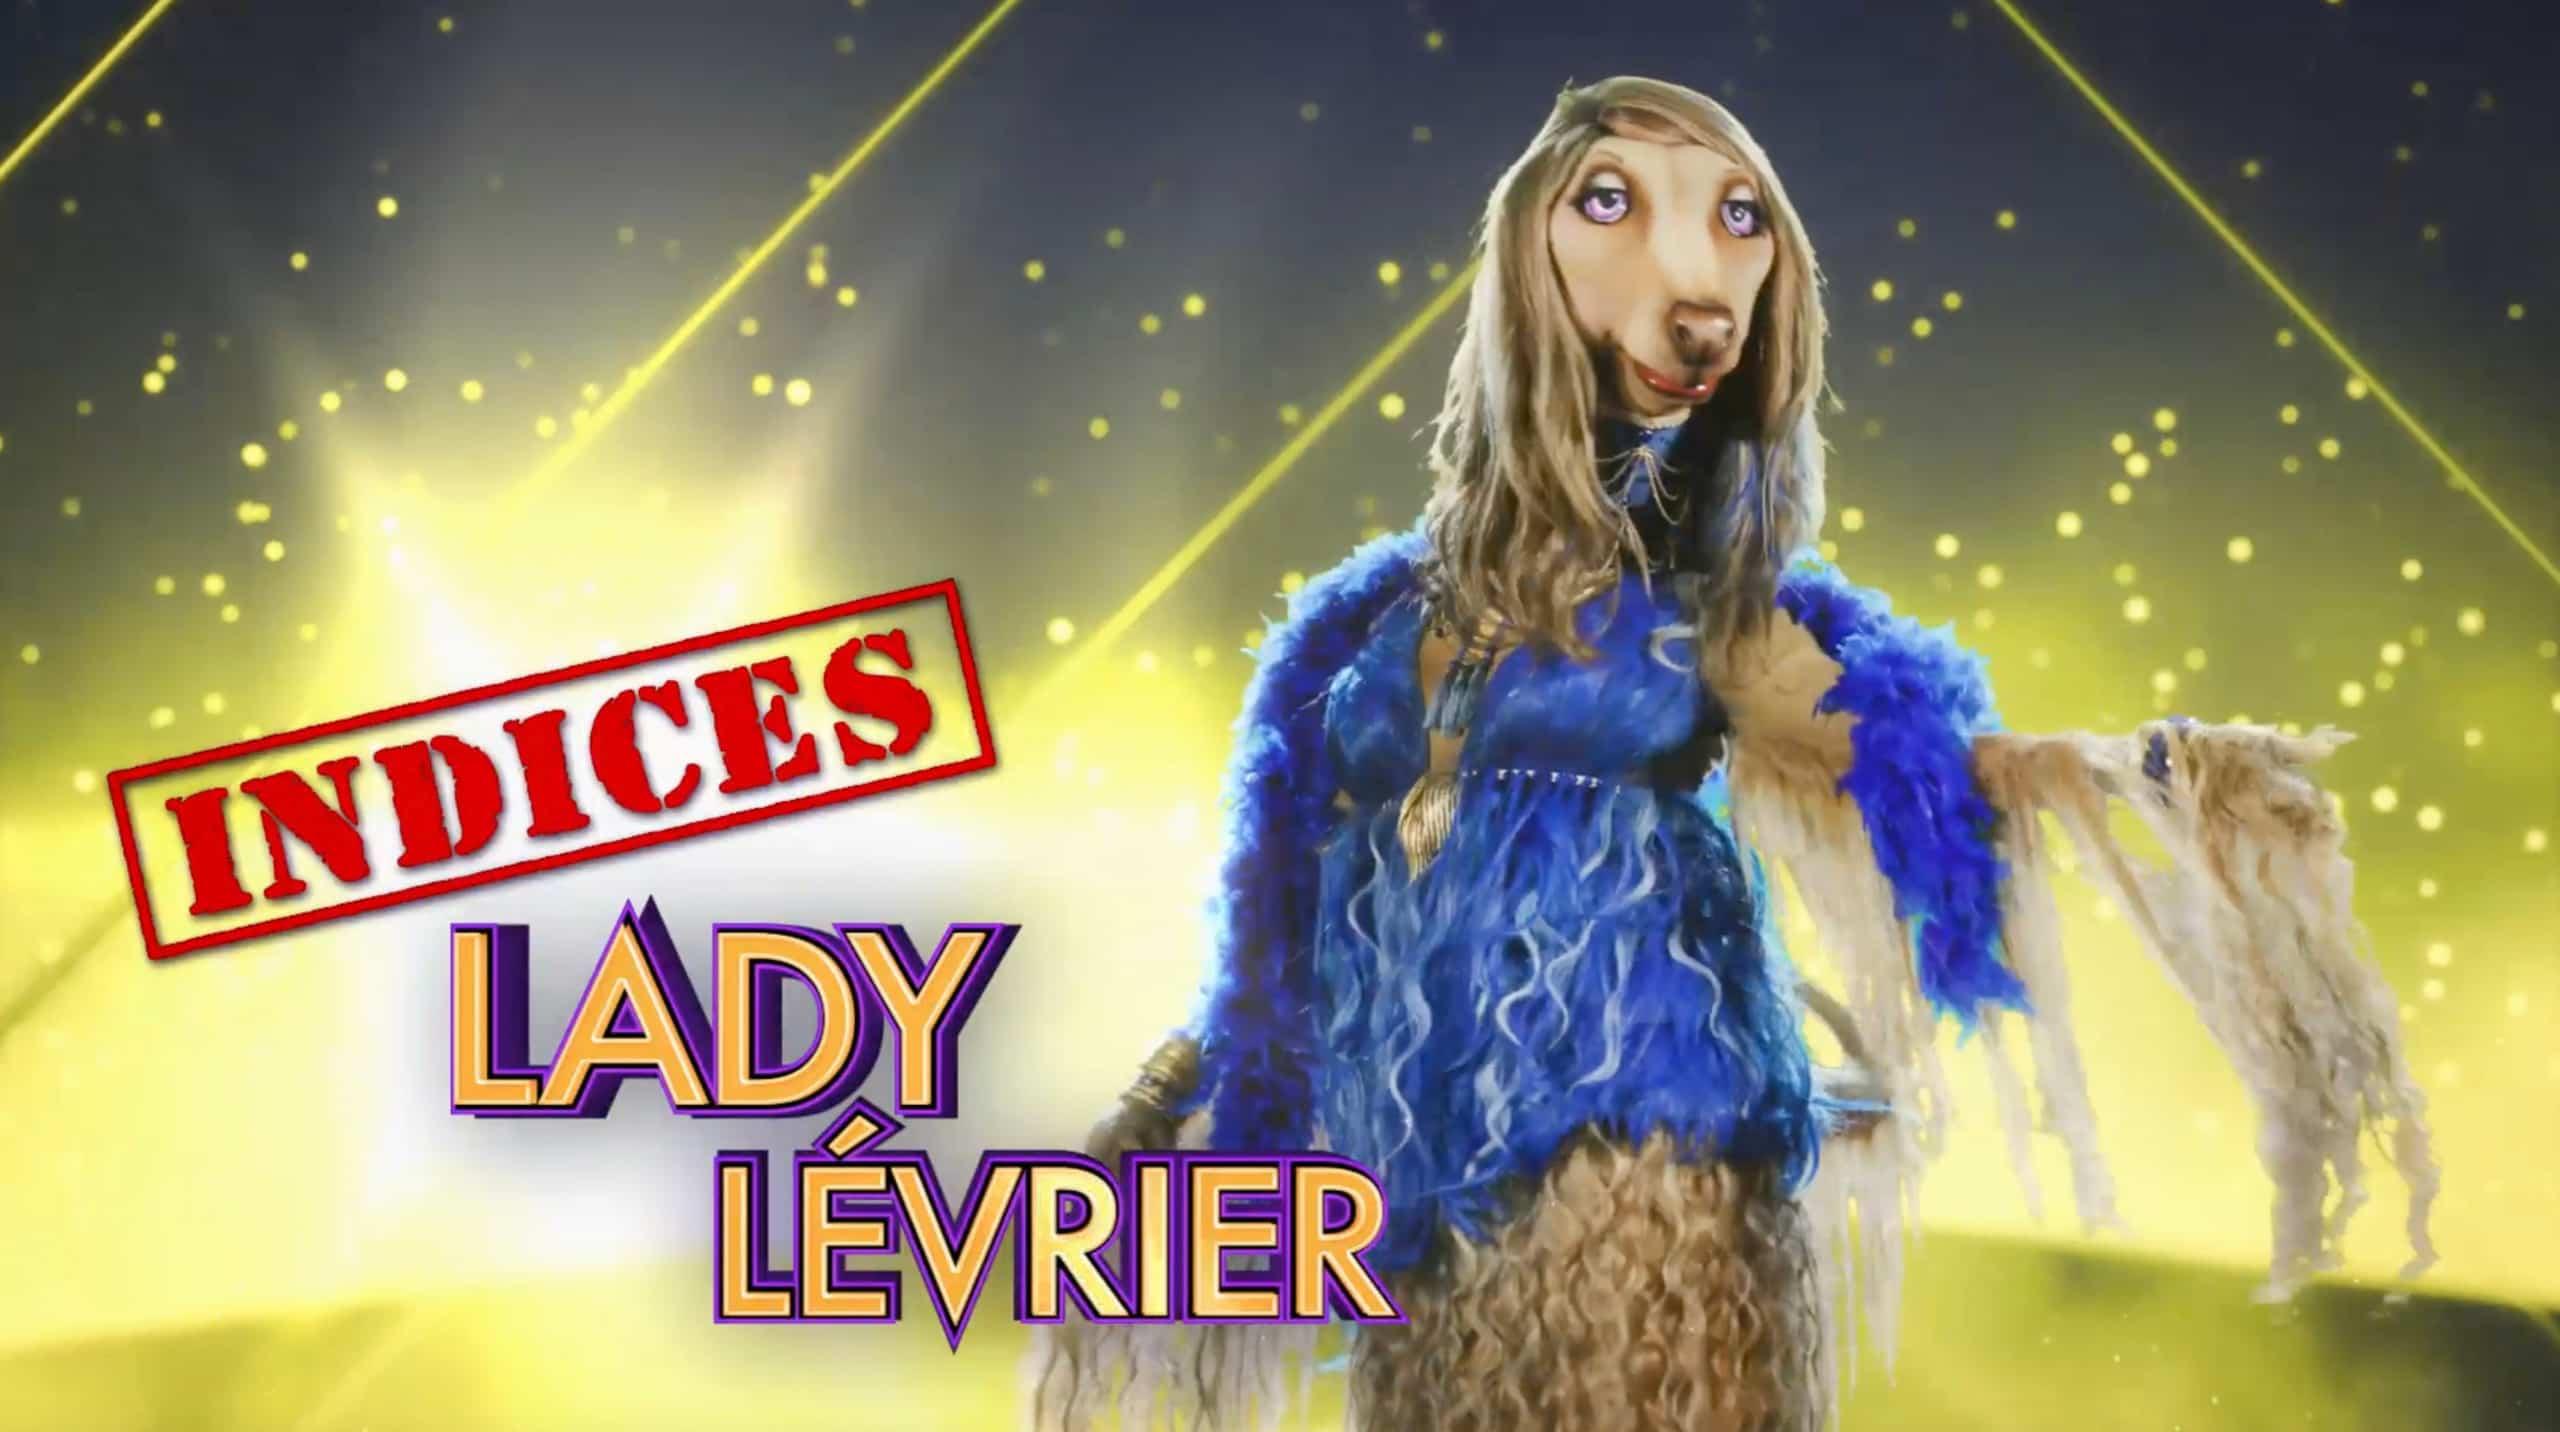 Lady Lévrier - Indices 1